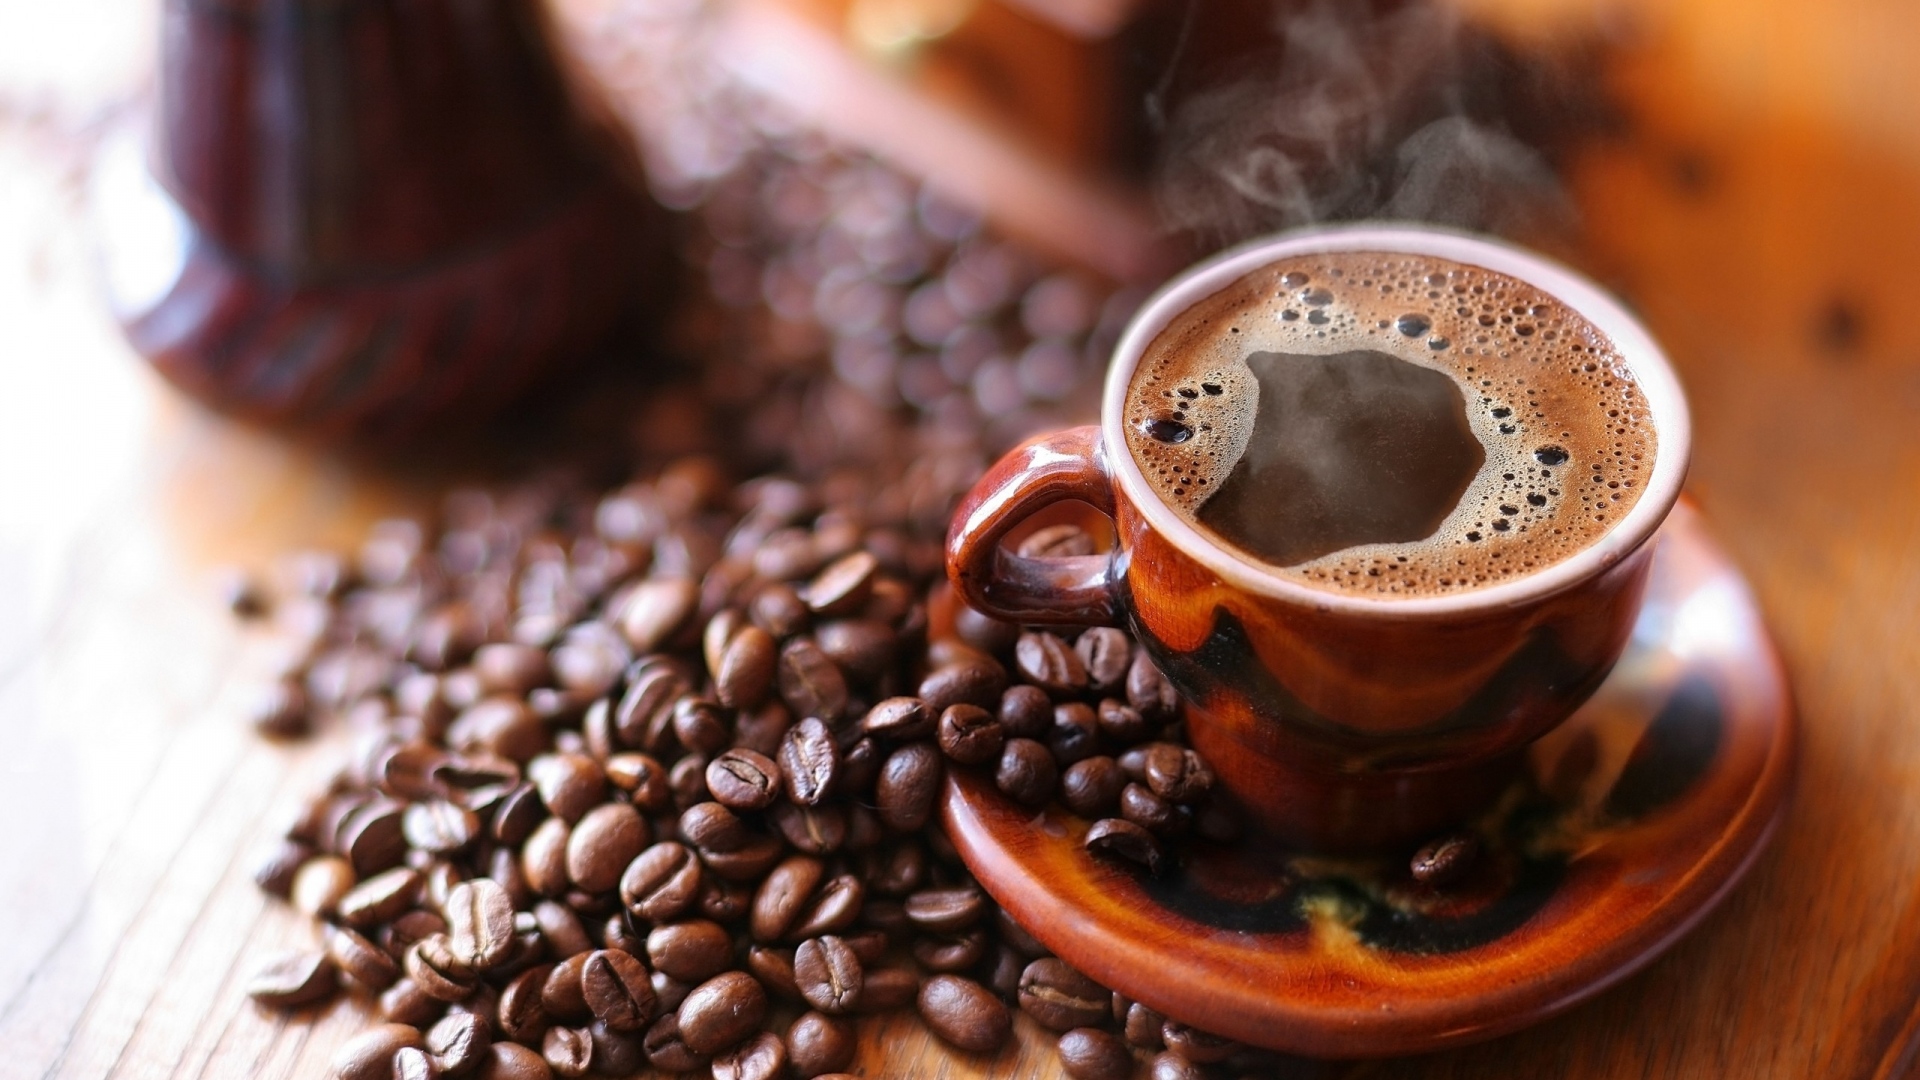 Nitelikli Kahve Nedir? Nitelikli Kahve Nasıl Ortaya Çıktı?